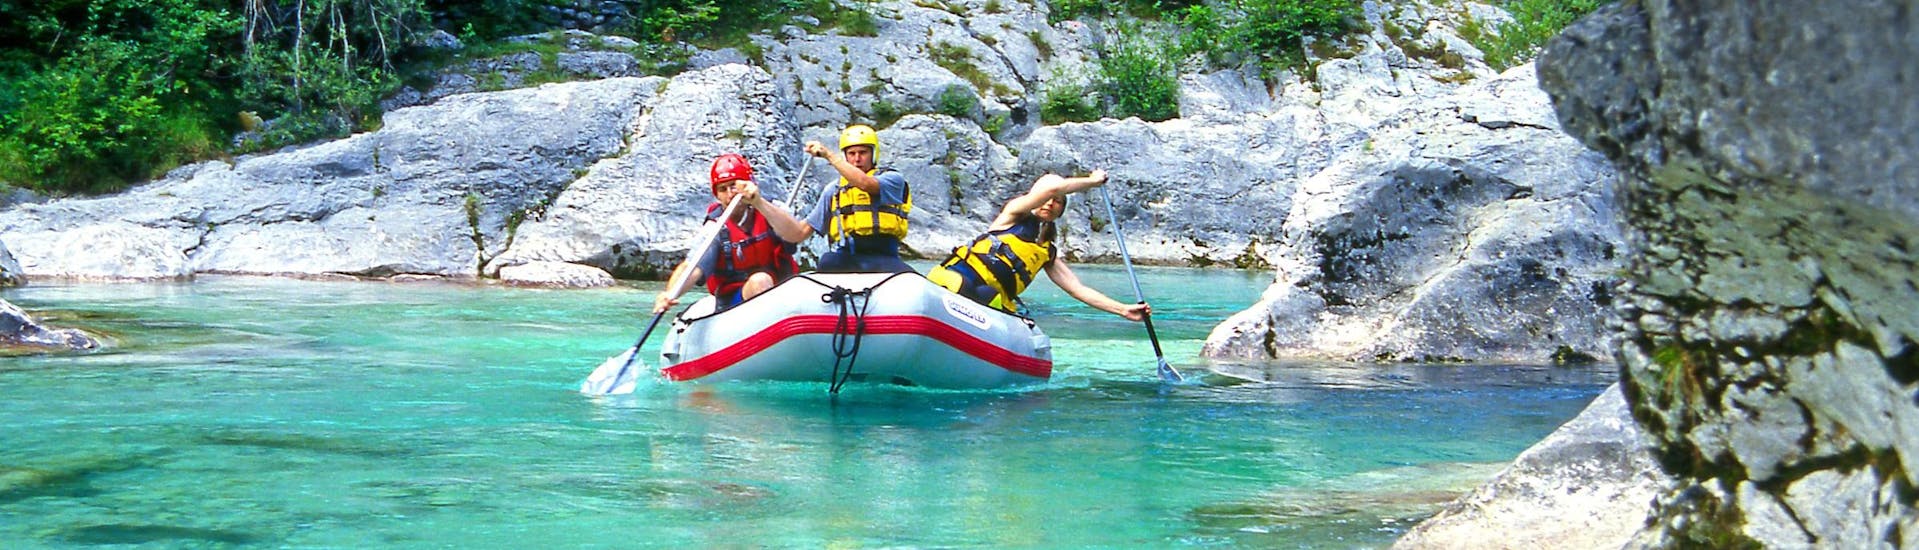 Sušec: Een groep jongeren geniet van een wildwateravontuur in een van de hotspots voor rafting.